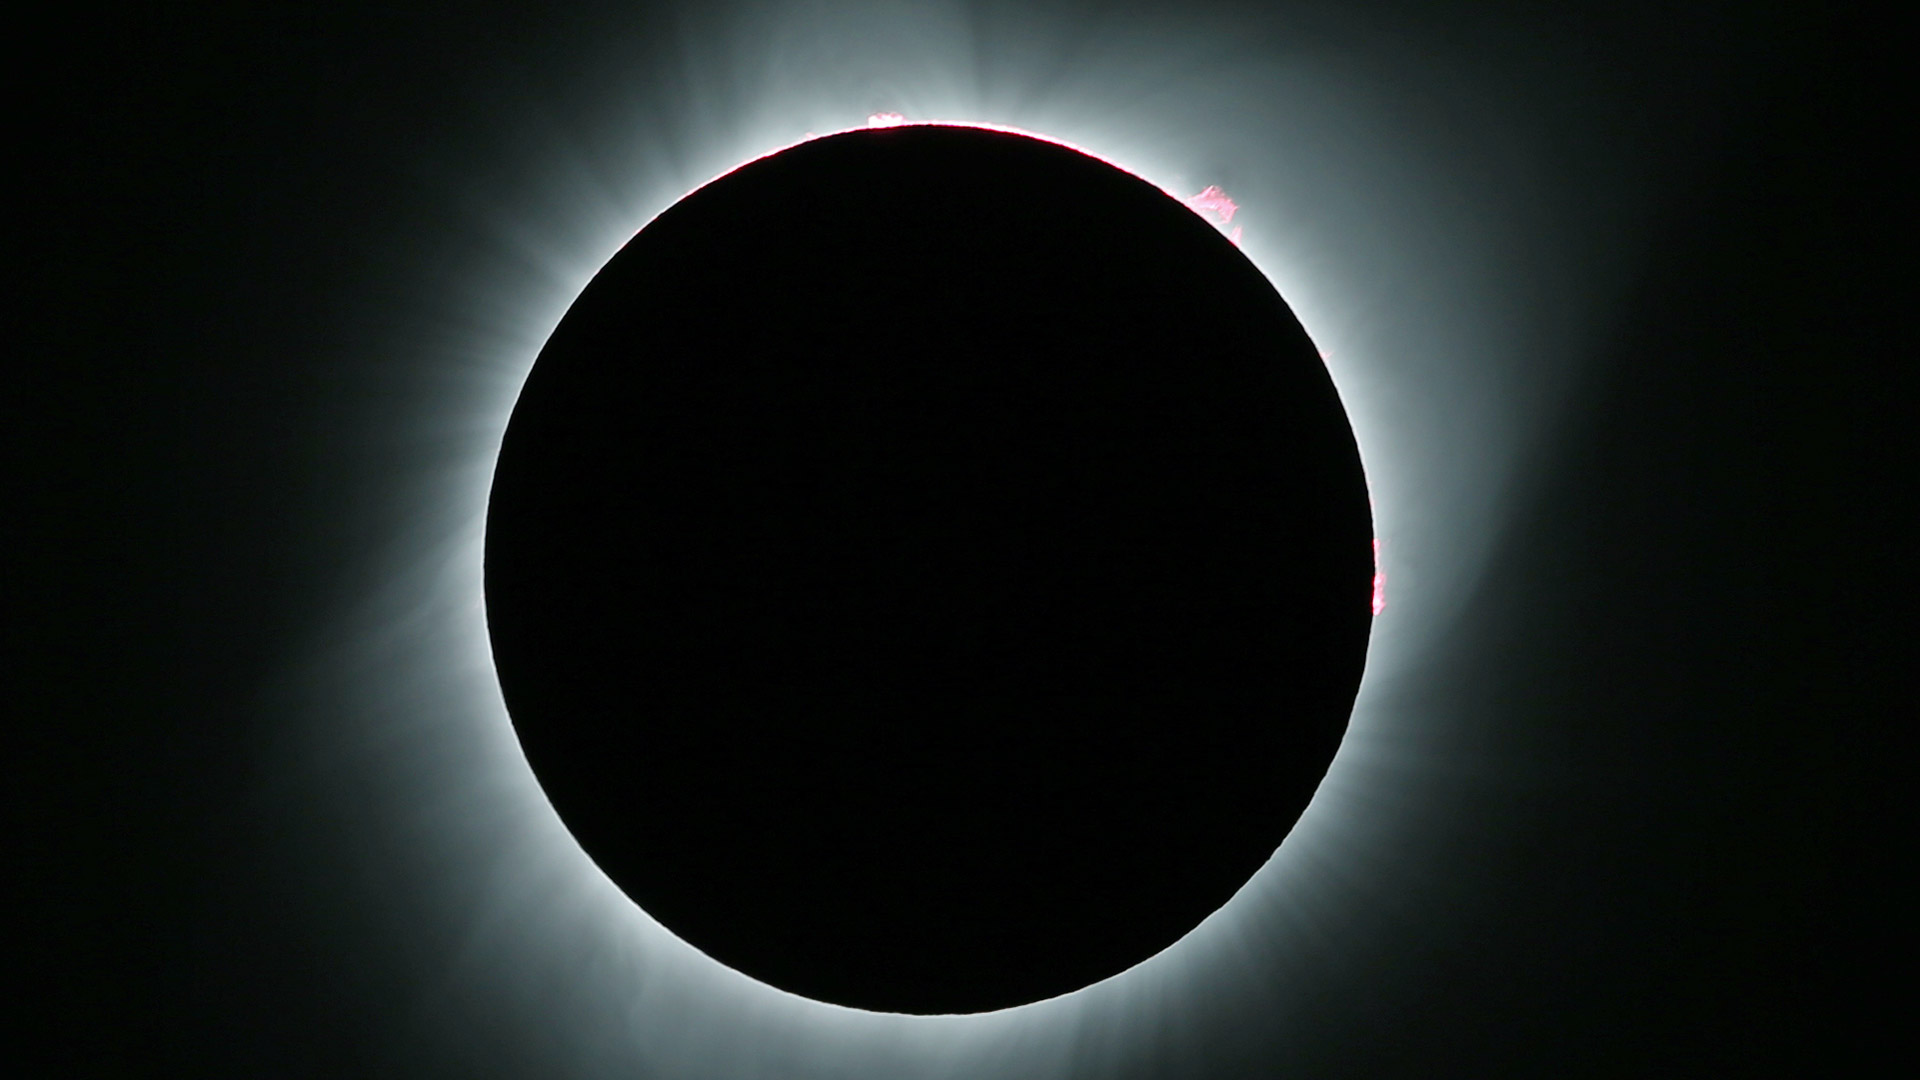 Estas son las mejores imágenes del eclipse solar de 2017